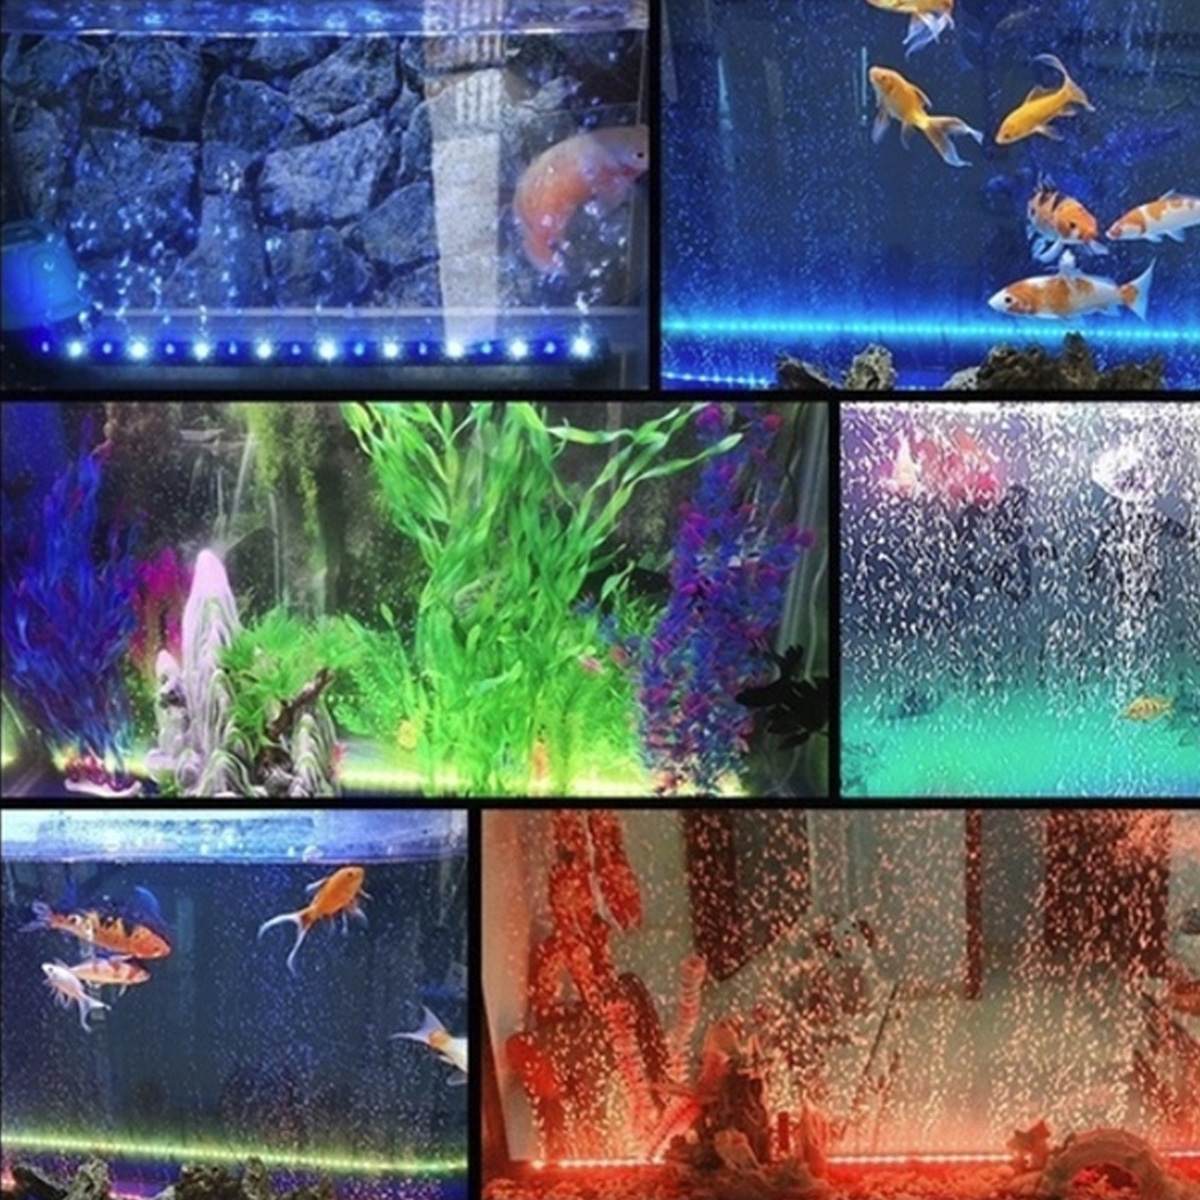 100-240v akvarium led bar lys vandtæt akvarium lys 15-55.5cm undervands ledet lys lampe til akvarier dekor belysning